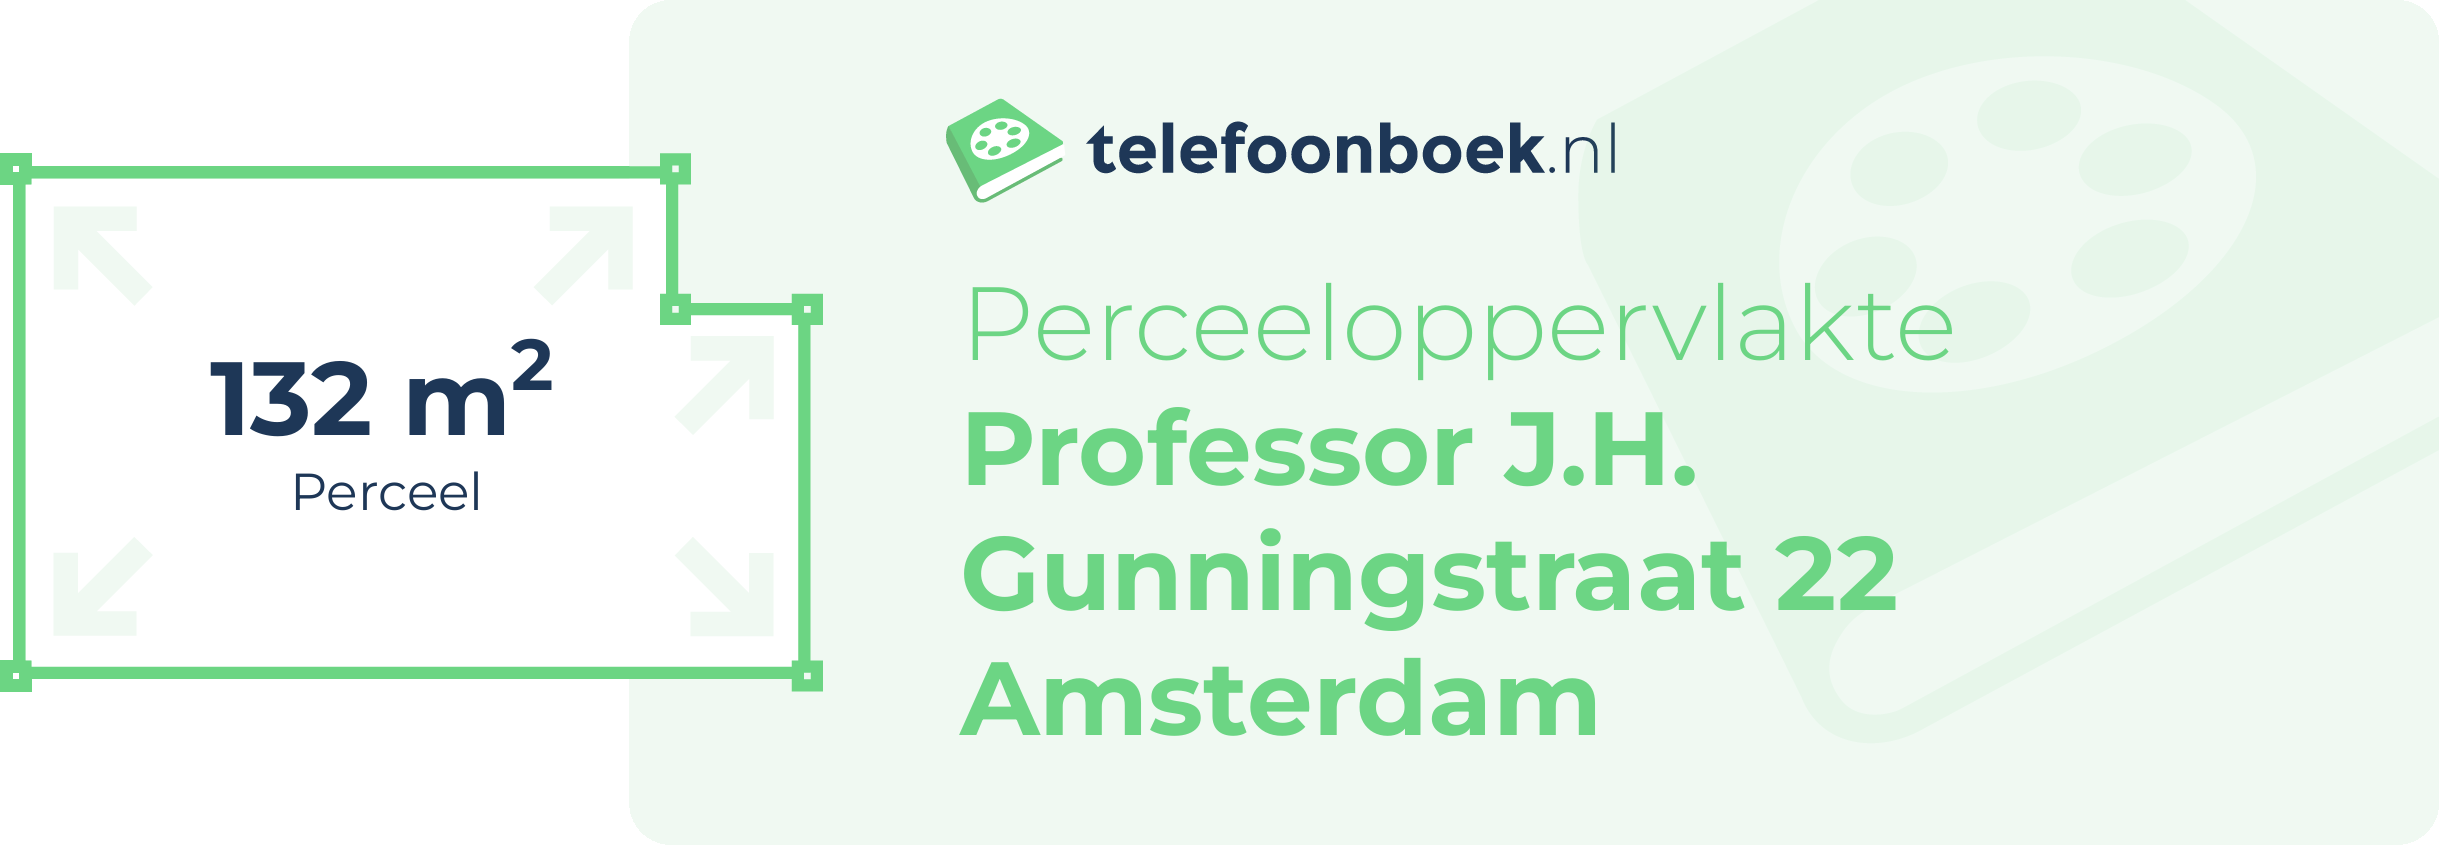 Perceeloppervlakte Professor J.H. Gunningstraat 22 Amsterdam